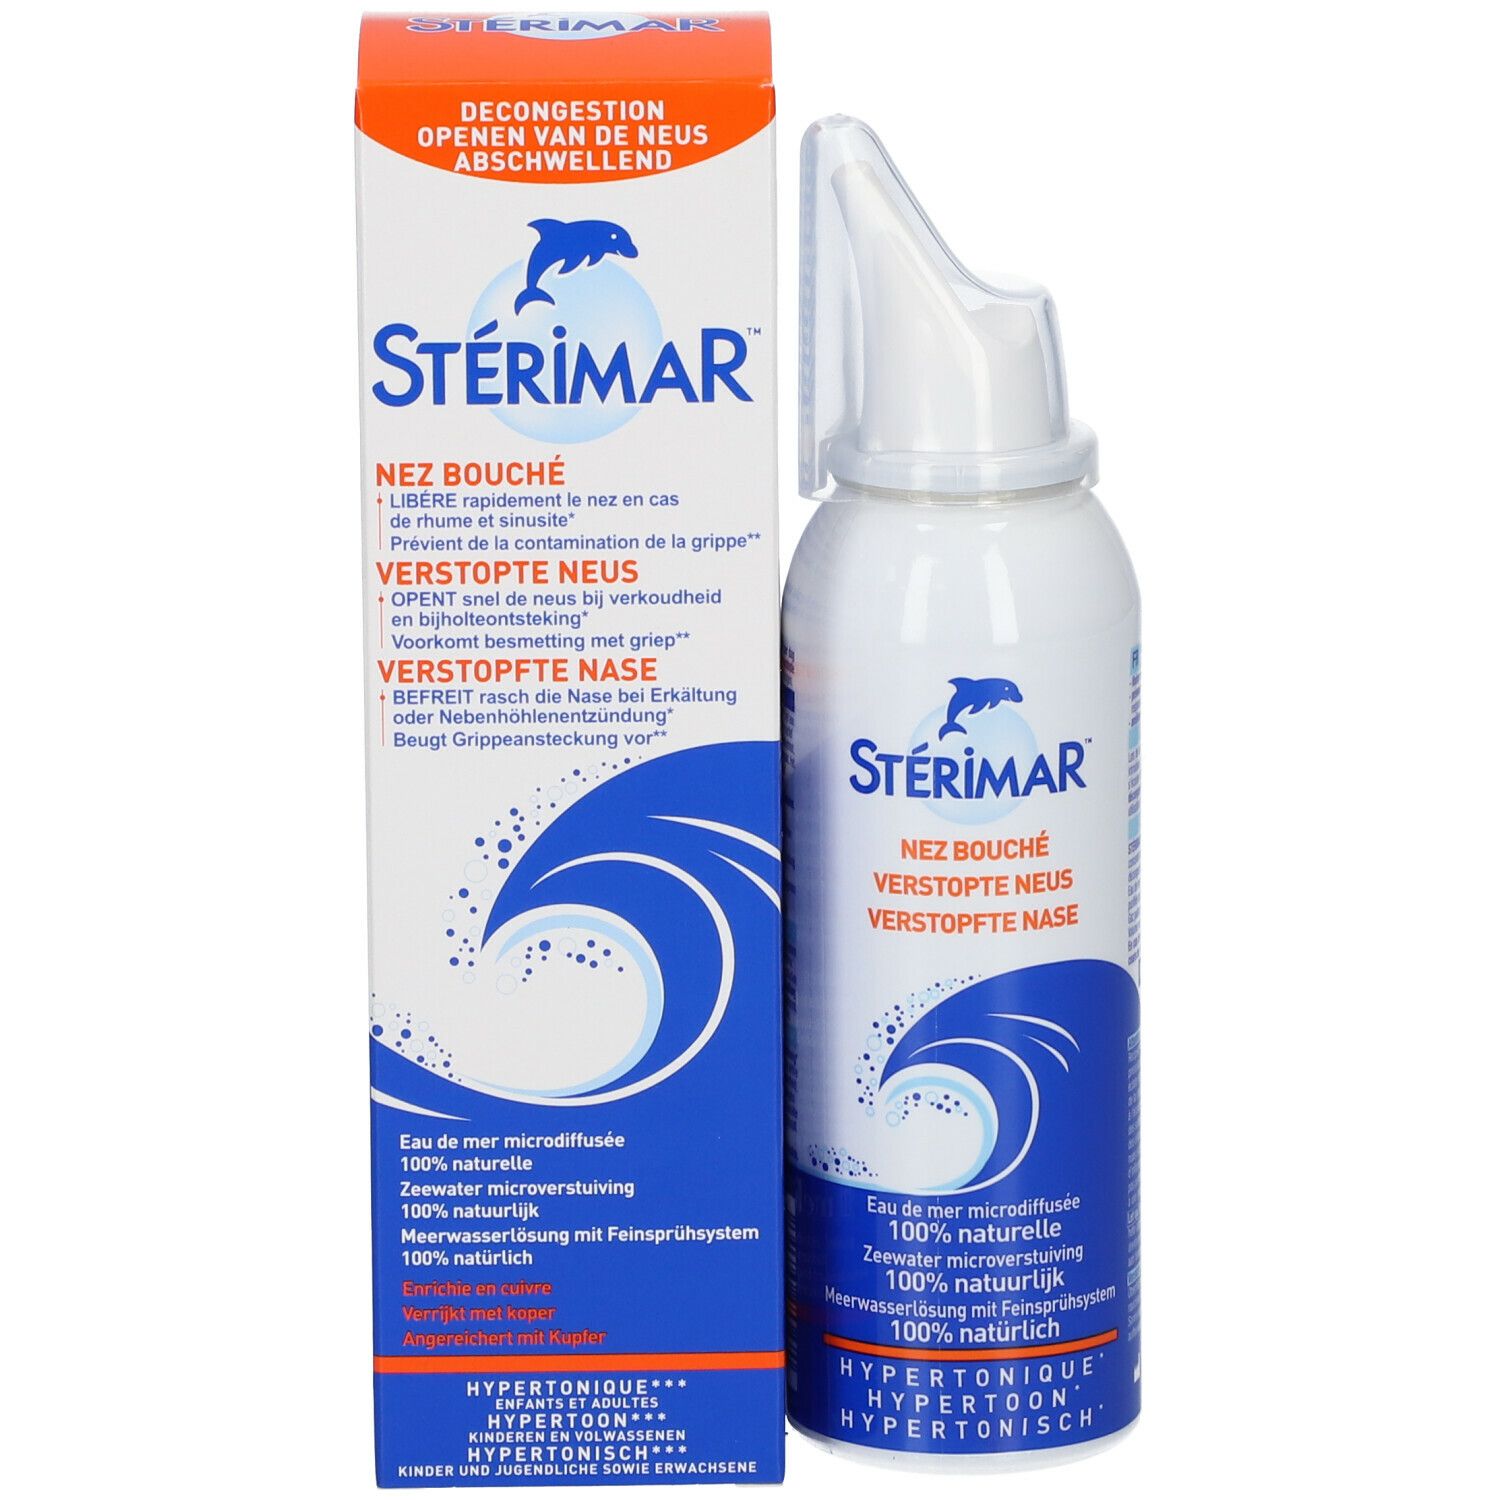 Sterimar Spray Nasal Hypertonique